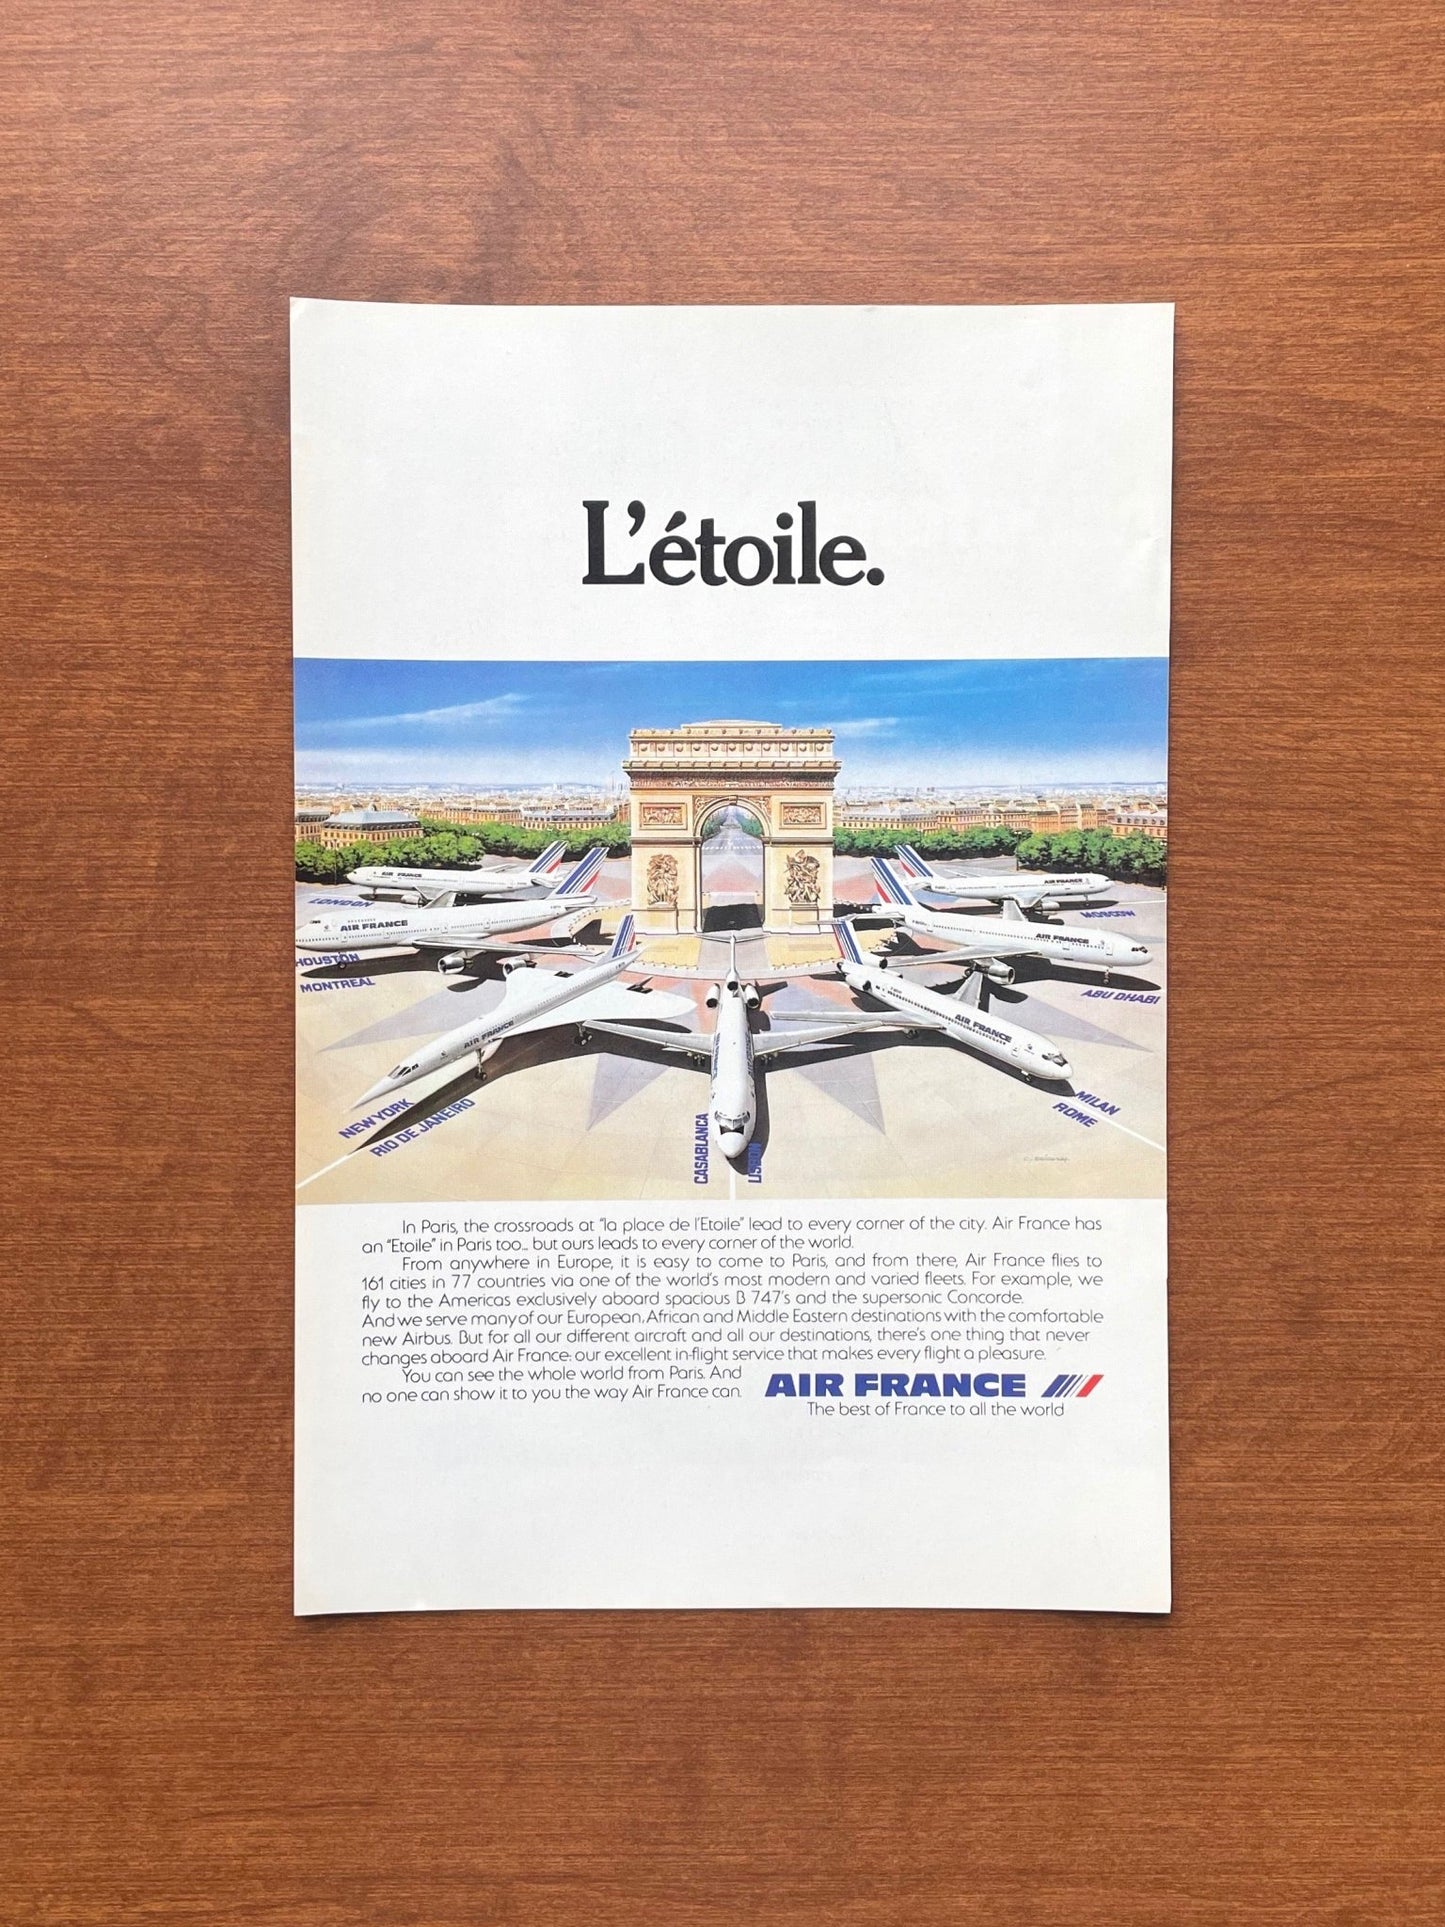 Air France Arc de Triomphe "L'Etoile" Advertisement